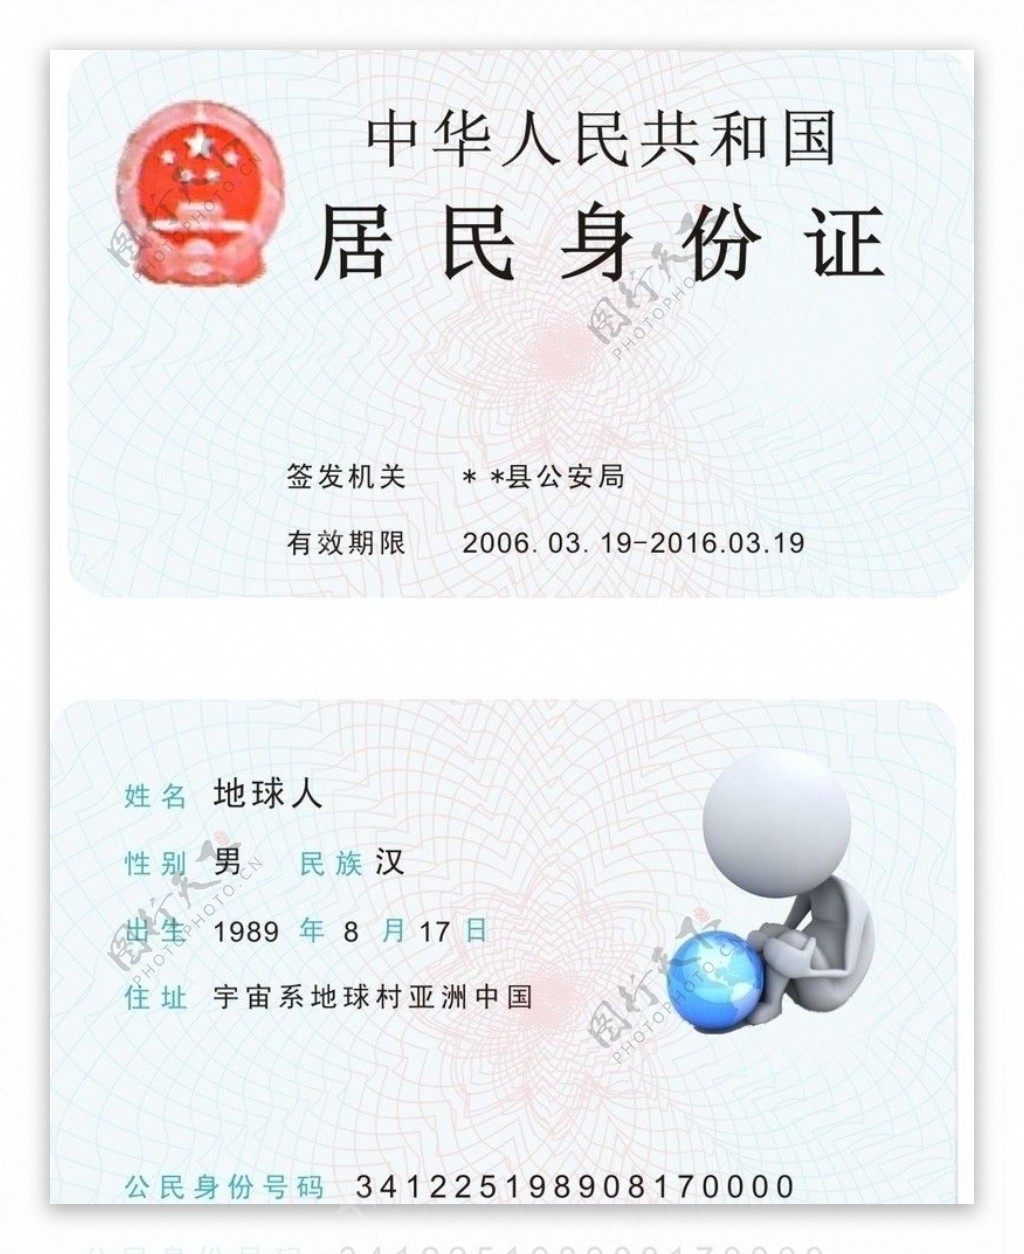 公民身份证图片